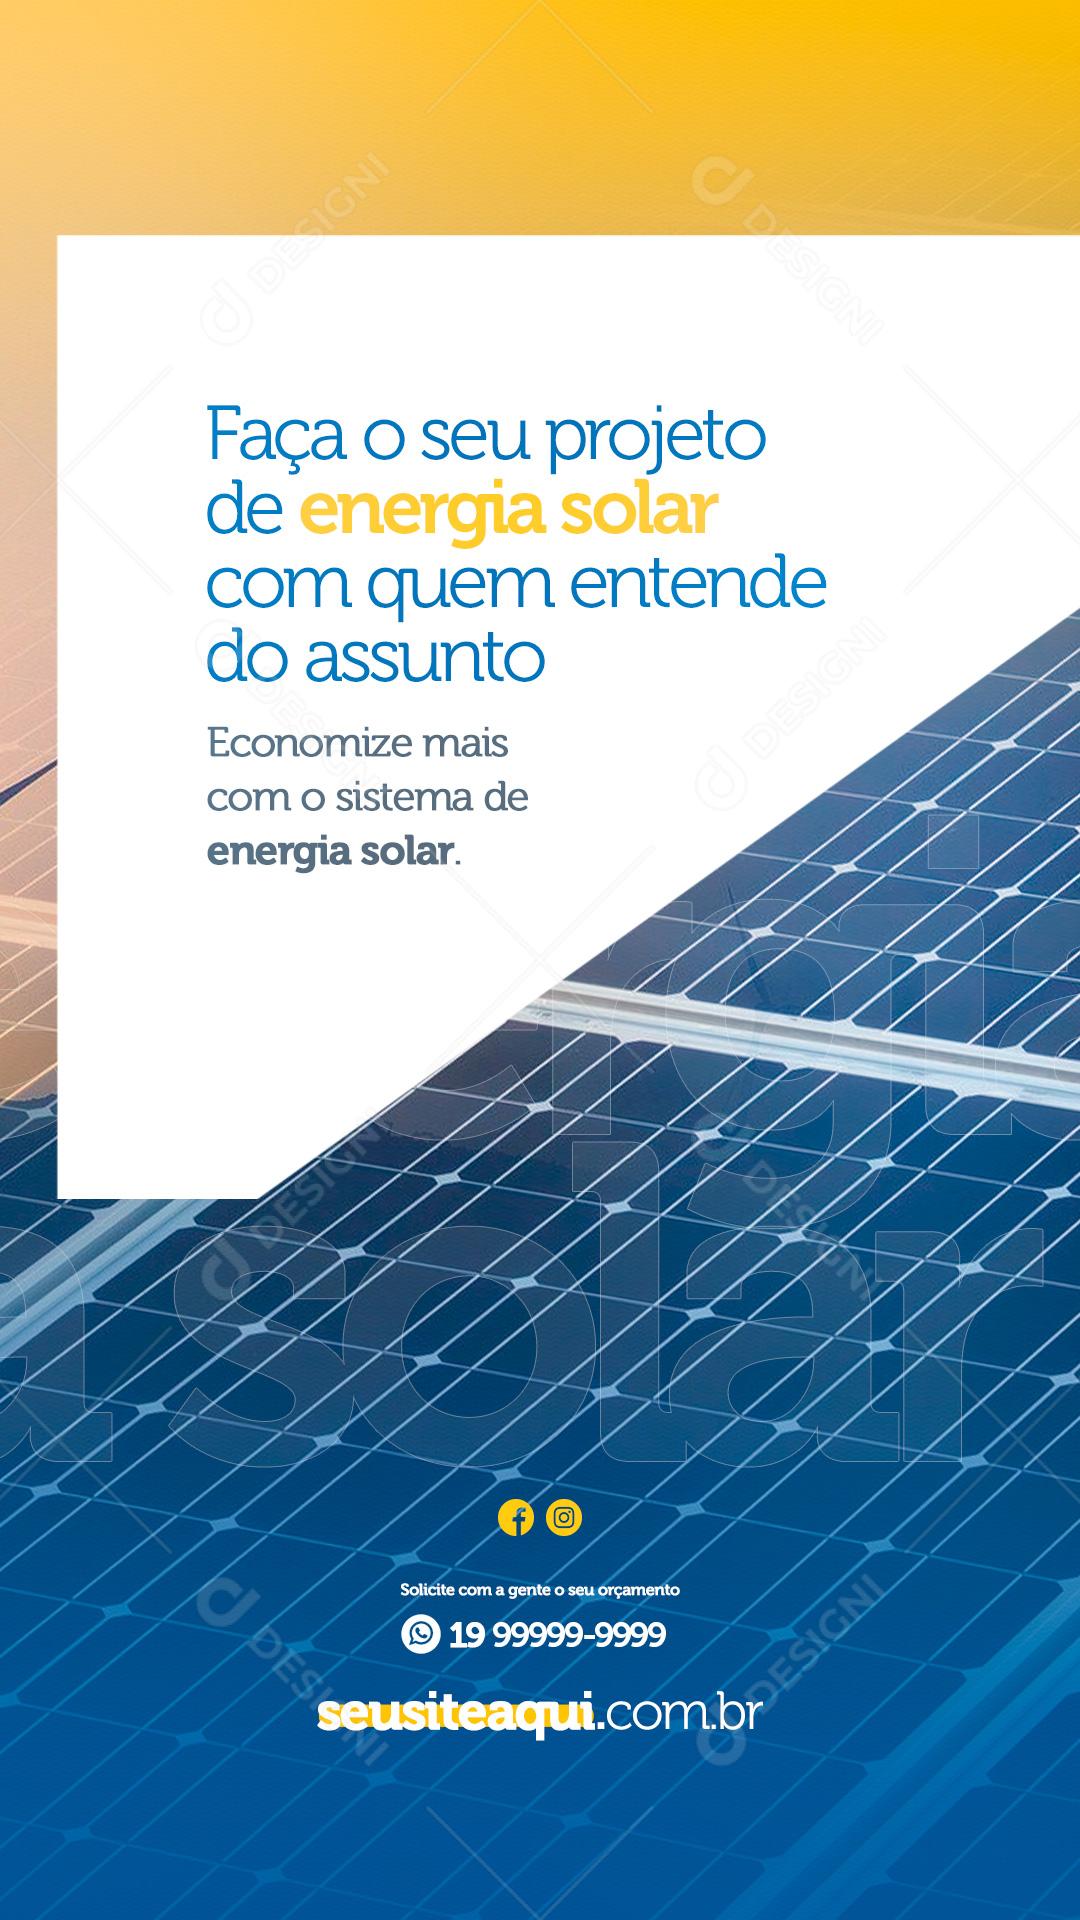 Social Media Story Energia Solar Faça o Seu Projeto PSD Editável